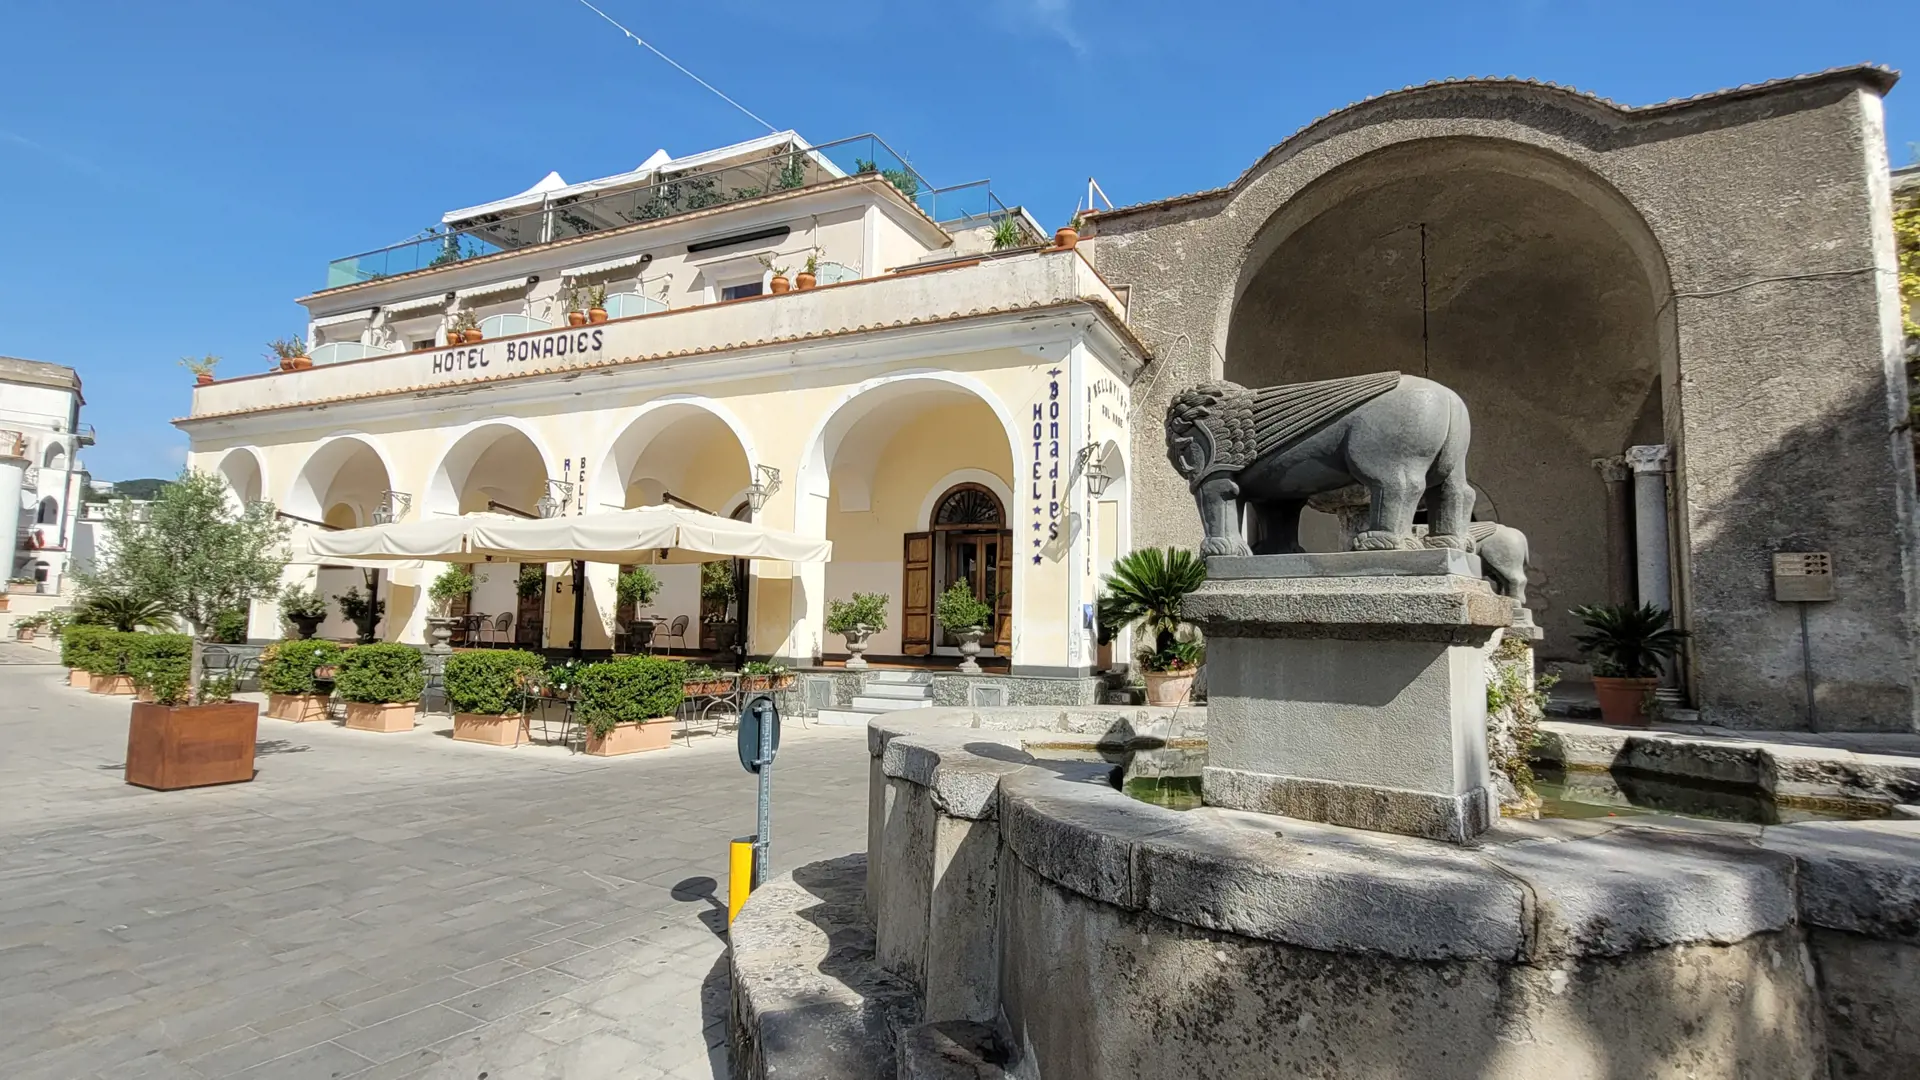 Hotel Bonadies ligger på ett torg i Ravello